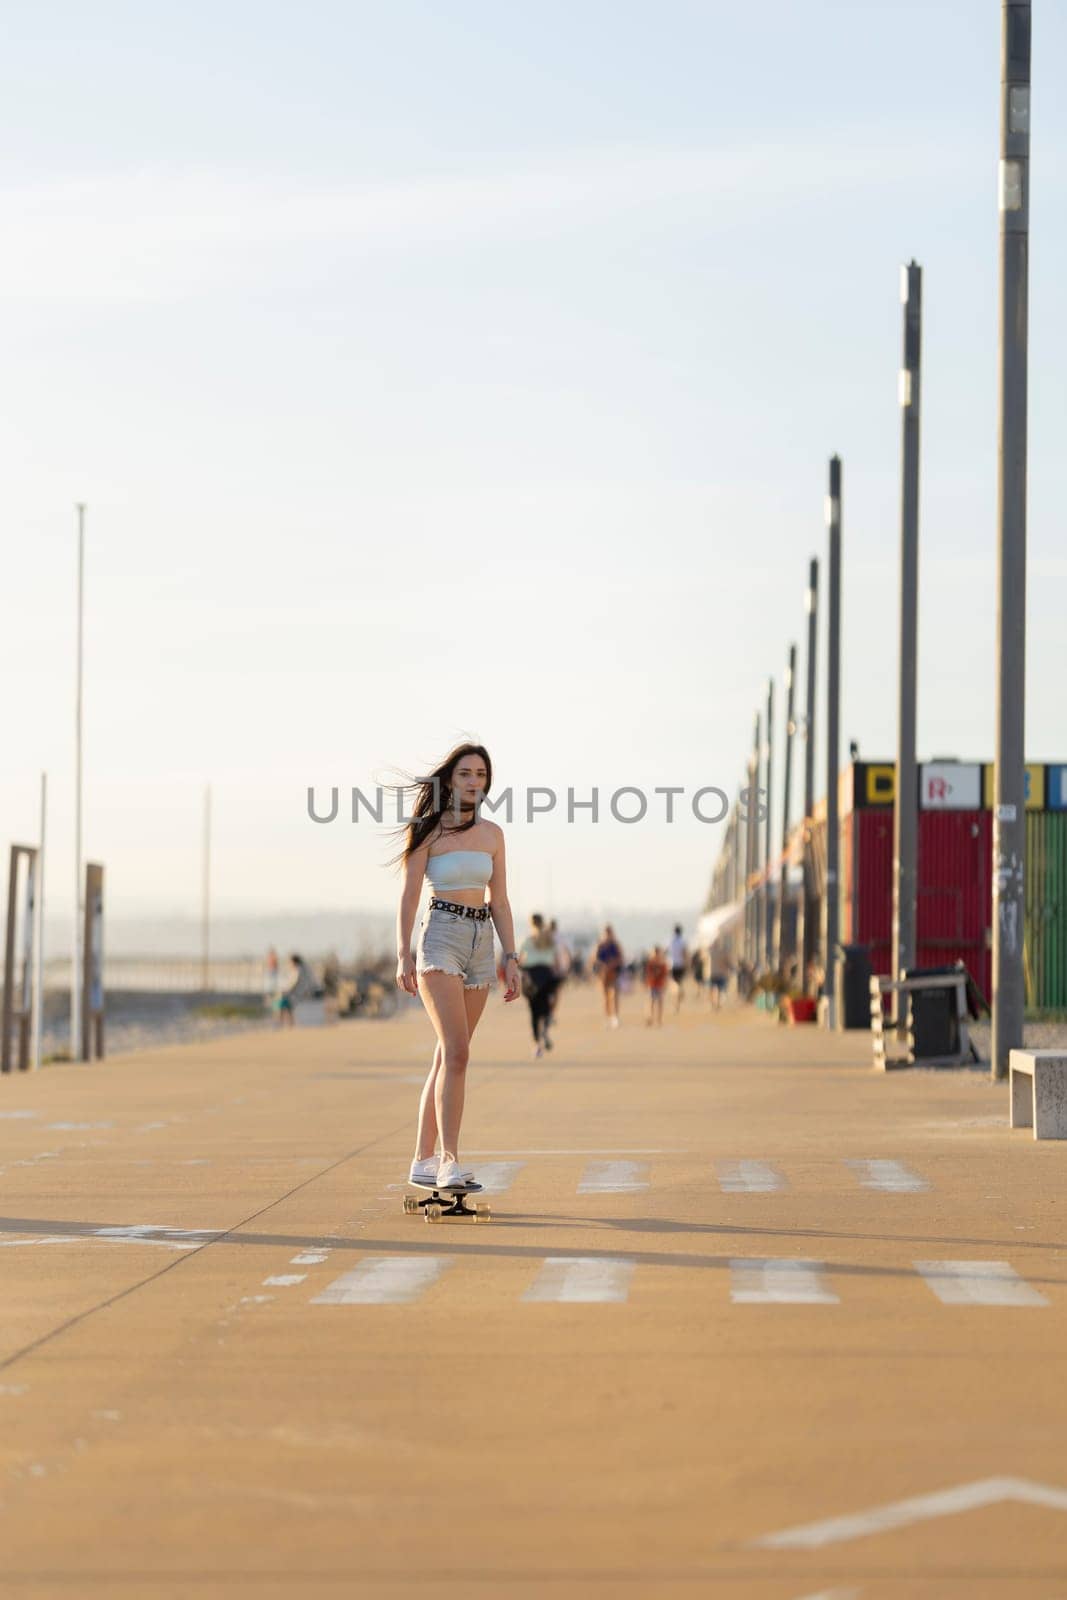 A woman is skateboarding down a sidewalk by Studia72